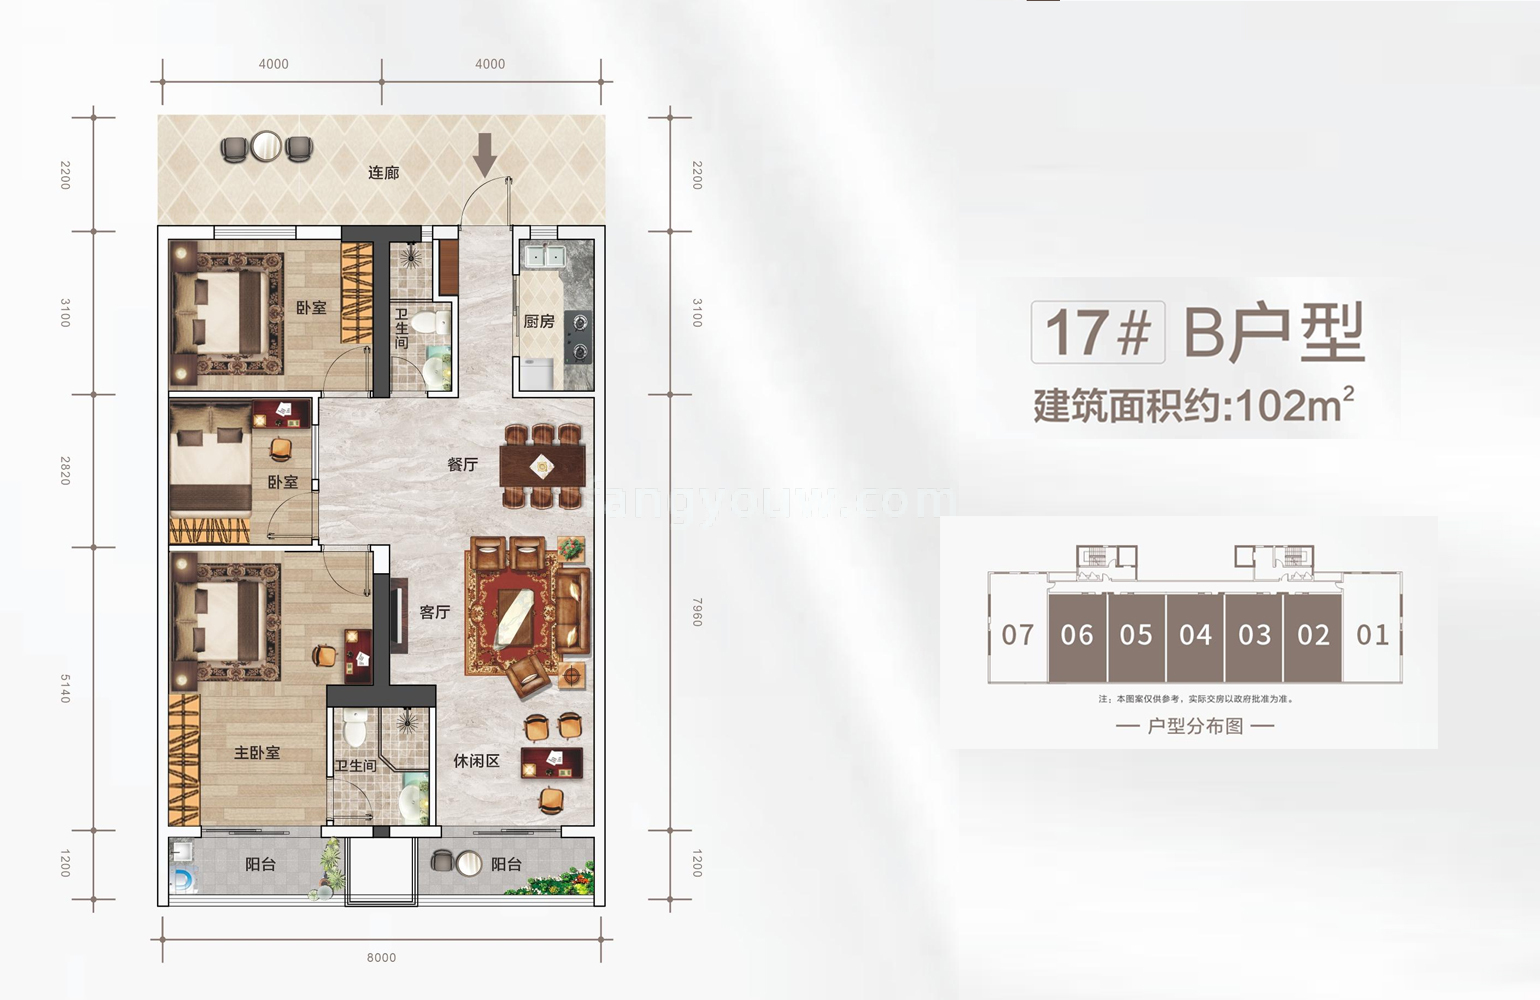 高层 17#B户型 3室2厅2卫建筑面积102㎡